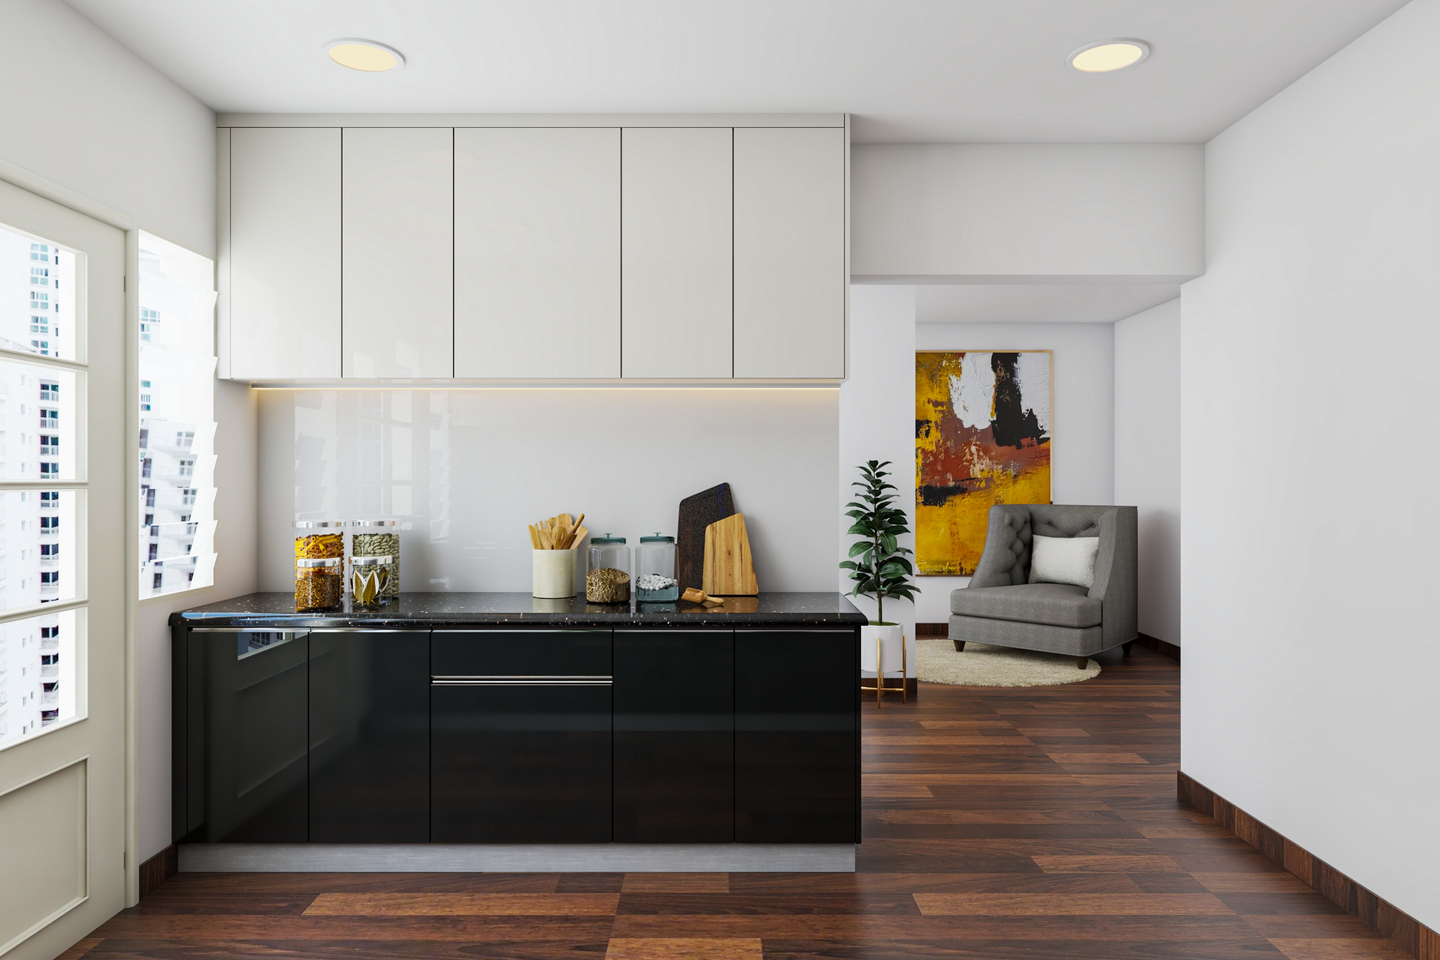 Black and White Kitchen Design with Dark Wood Flooring - Livspace